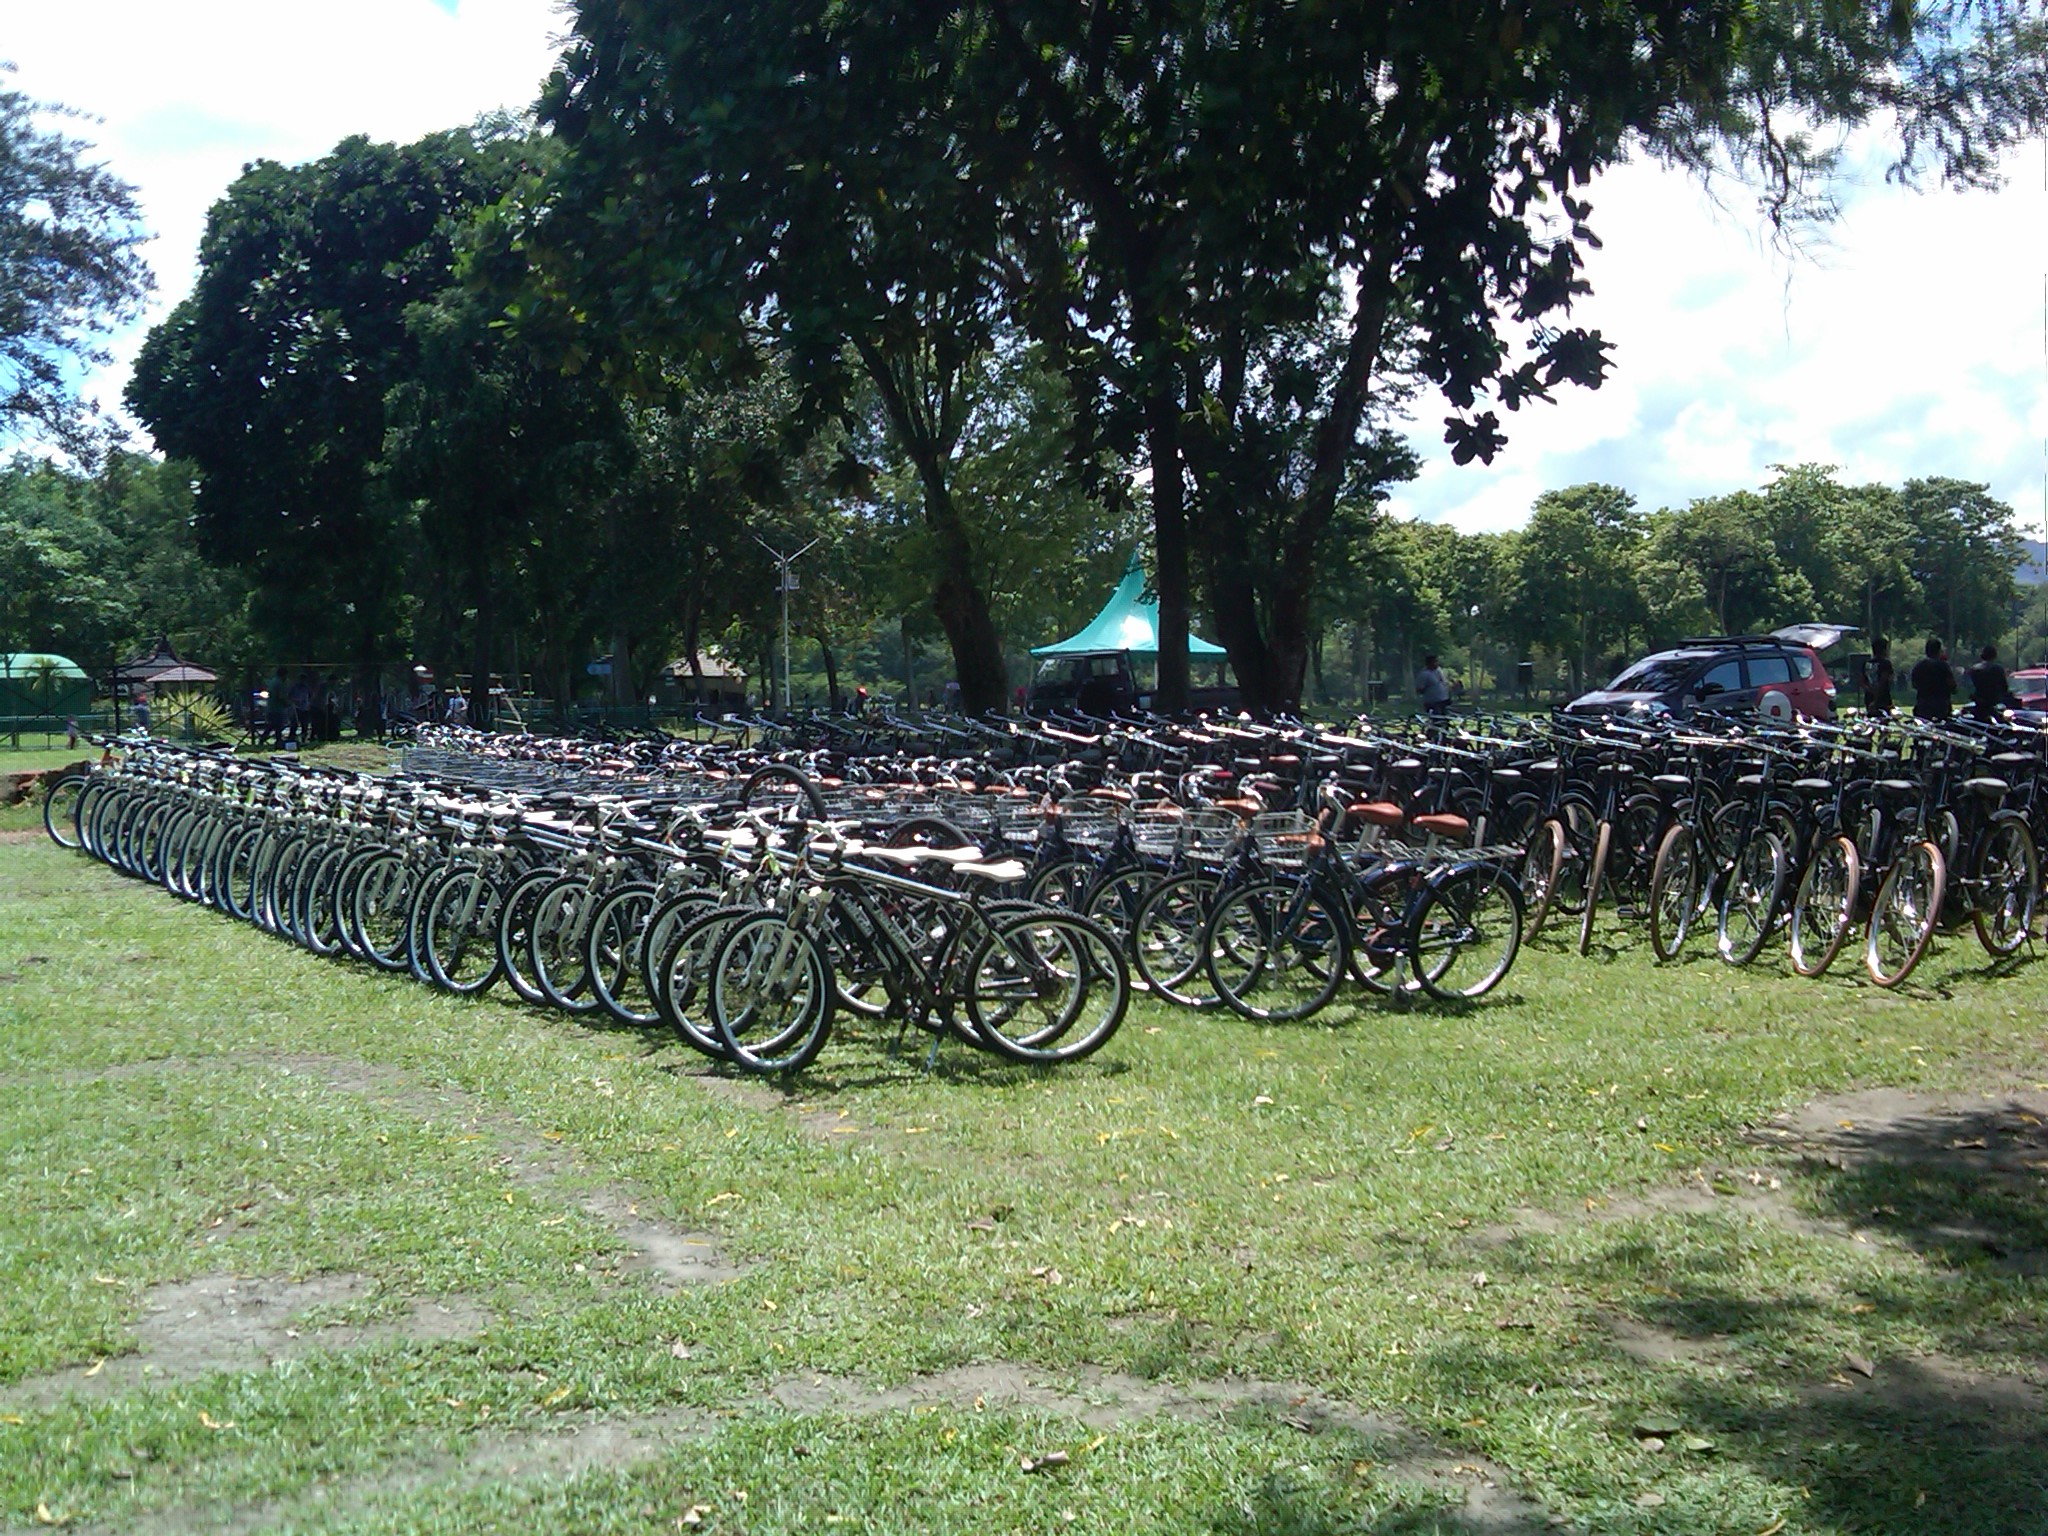 Rental Sepeda Gunung Dan Sewa Sepeda Onthel Di Jogja , HD Wallpaper & Backgrounds